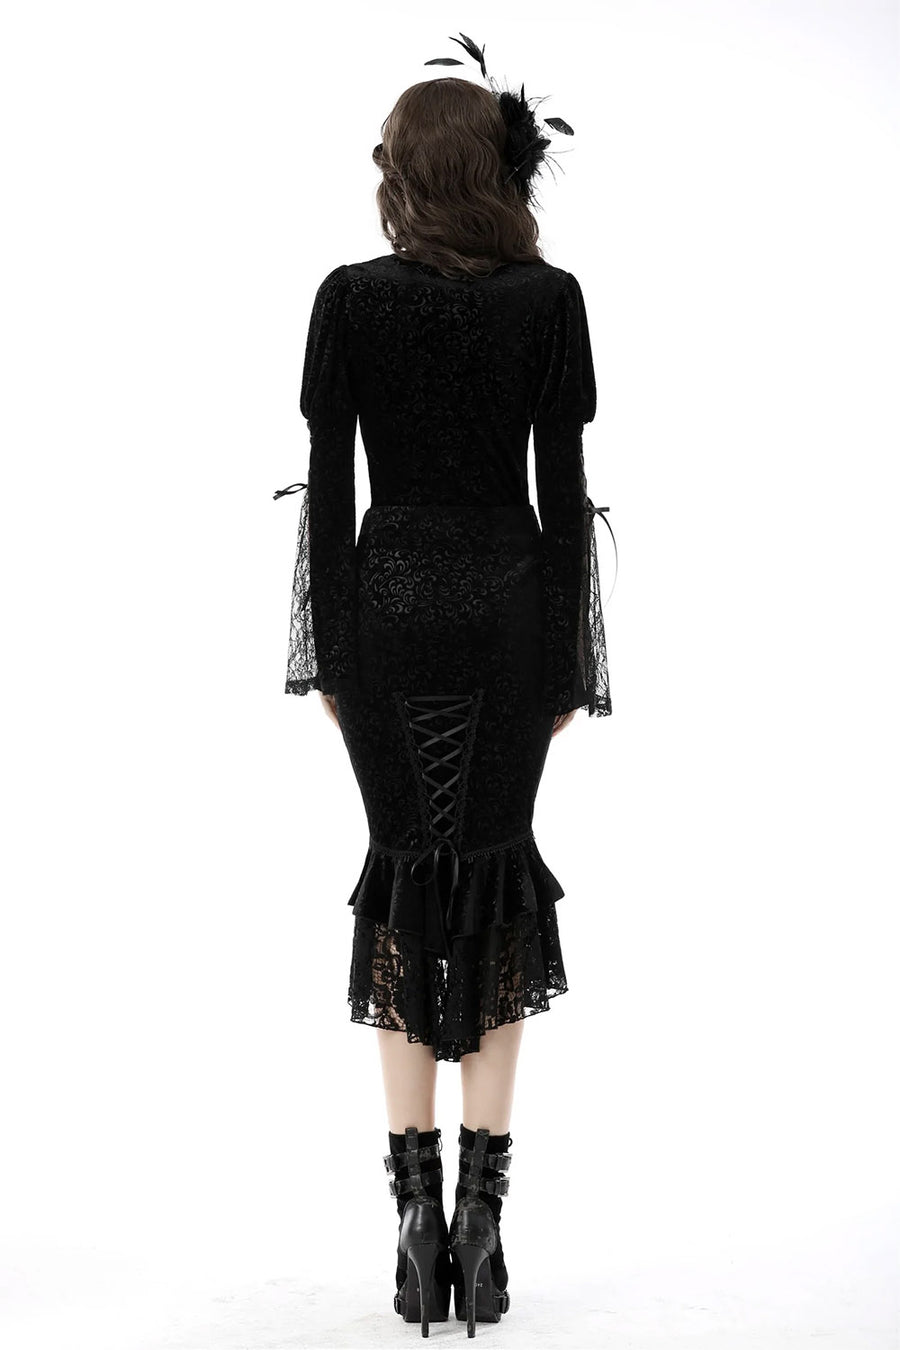 Ghostling Vintage Goth Skirt – VampireFreaks